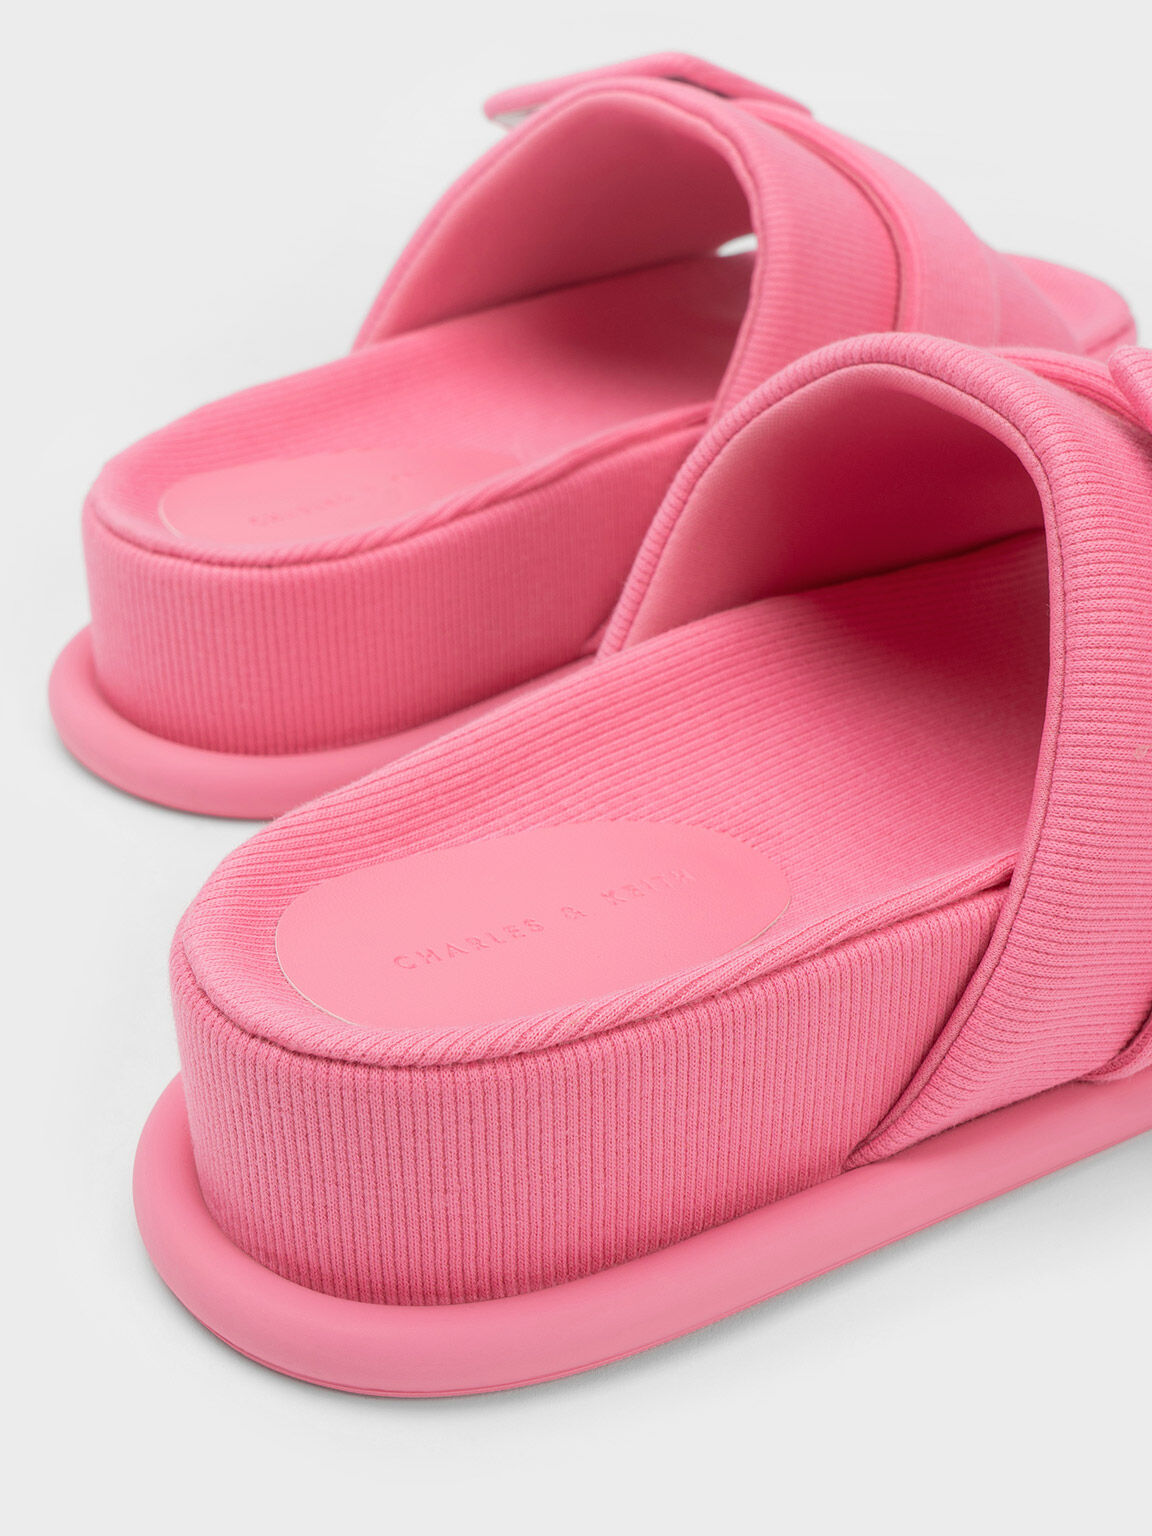 Sandal Slide Buckled Sinead Woven, Pink, hi-res